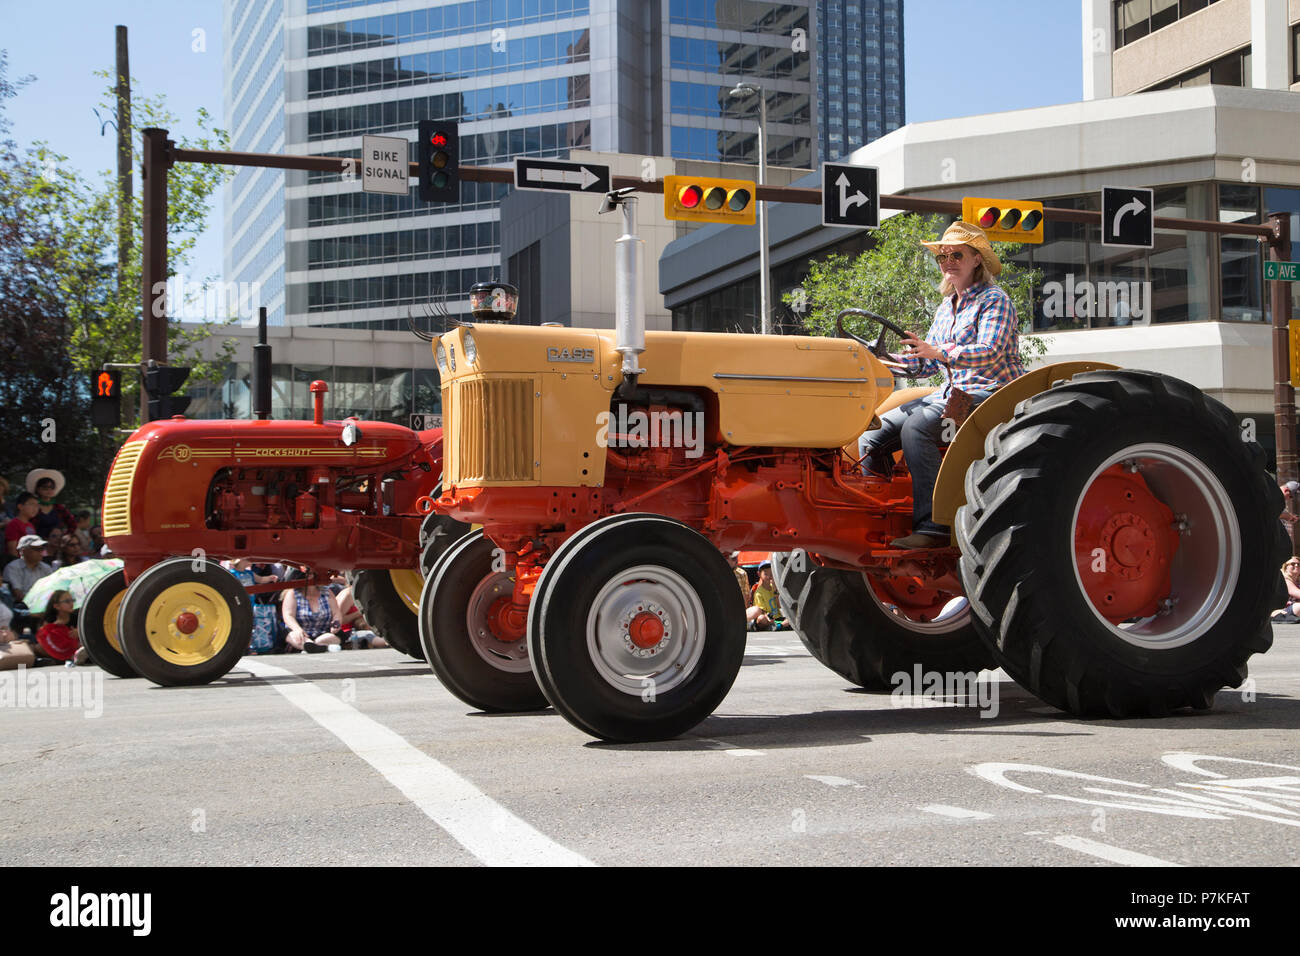 Frau fährt in der Calgary Stampede Parade mit einem Oldtimer-Traktor. Die Parade durch die Innenstadt startet jedes Jahr die Calgary Stampede. Rosanne Tackaberry/Alamy Live News Stockfoto